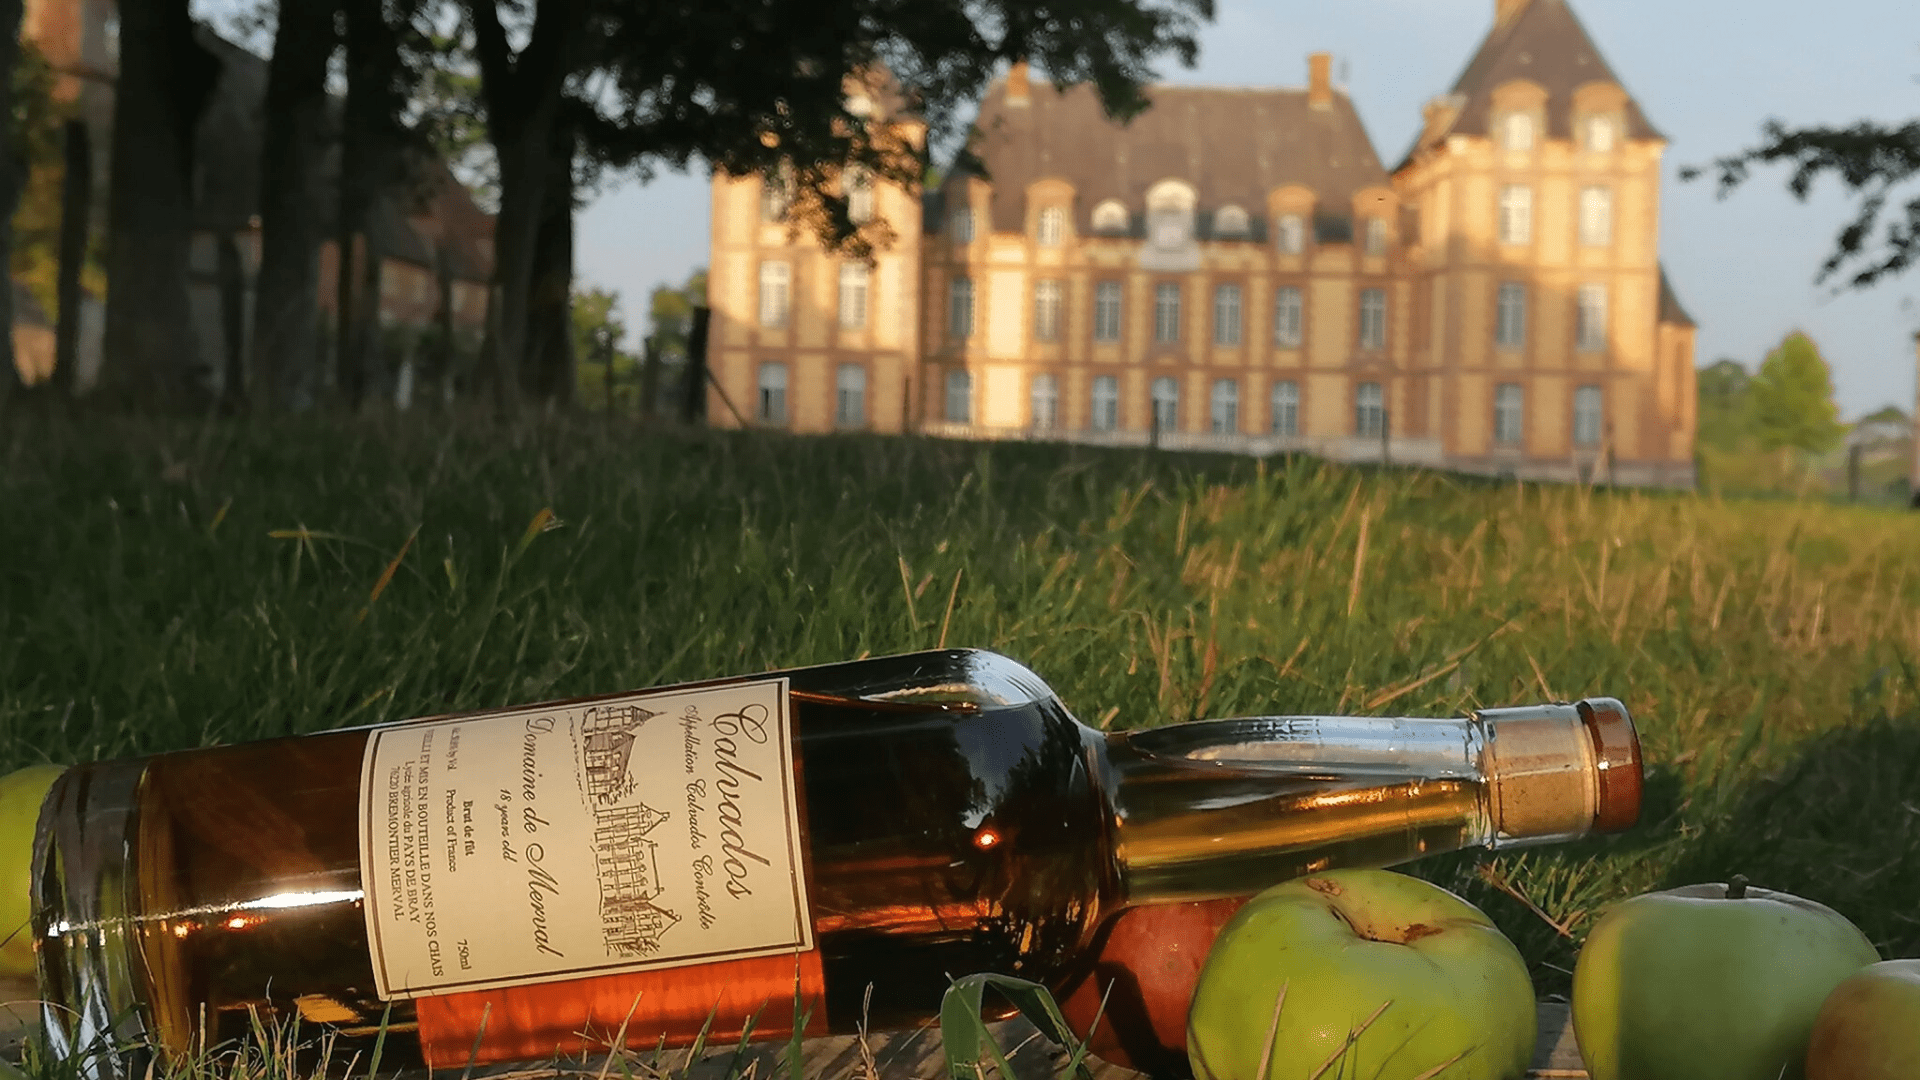 Bouteille de Calvados fabriqué au domaine de Merval et château du domaine en fond.